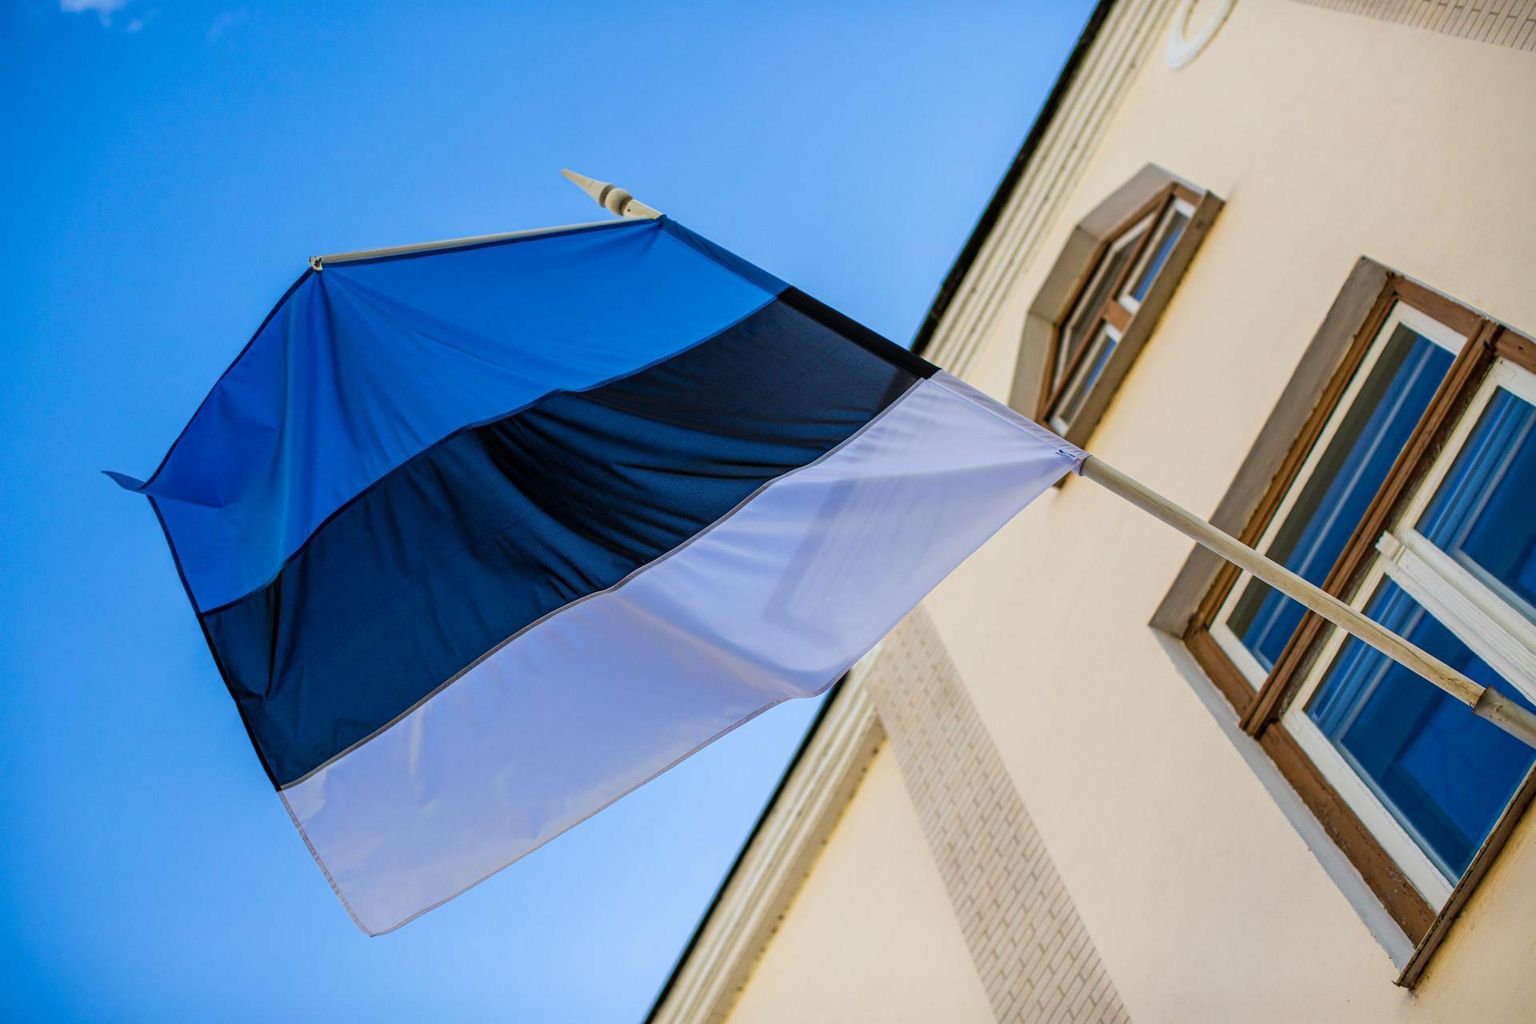 Sellest aastast on riiklikus tähtpäevade kalendris uus lipupäev: 30. jaanuar on Eesti kirjanduse päev.